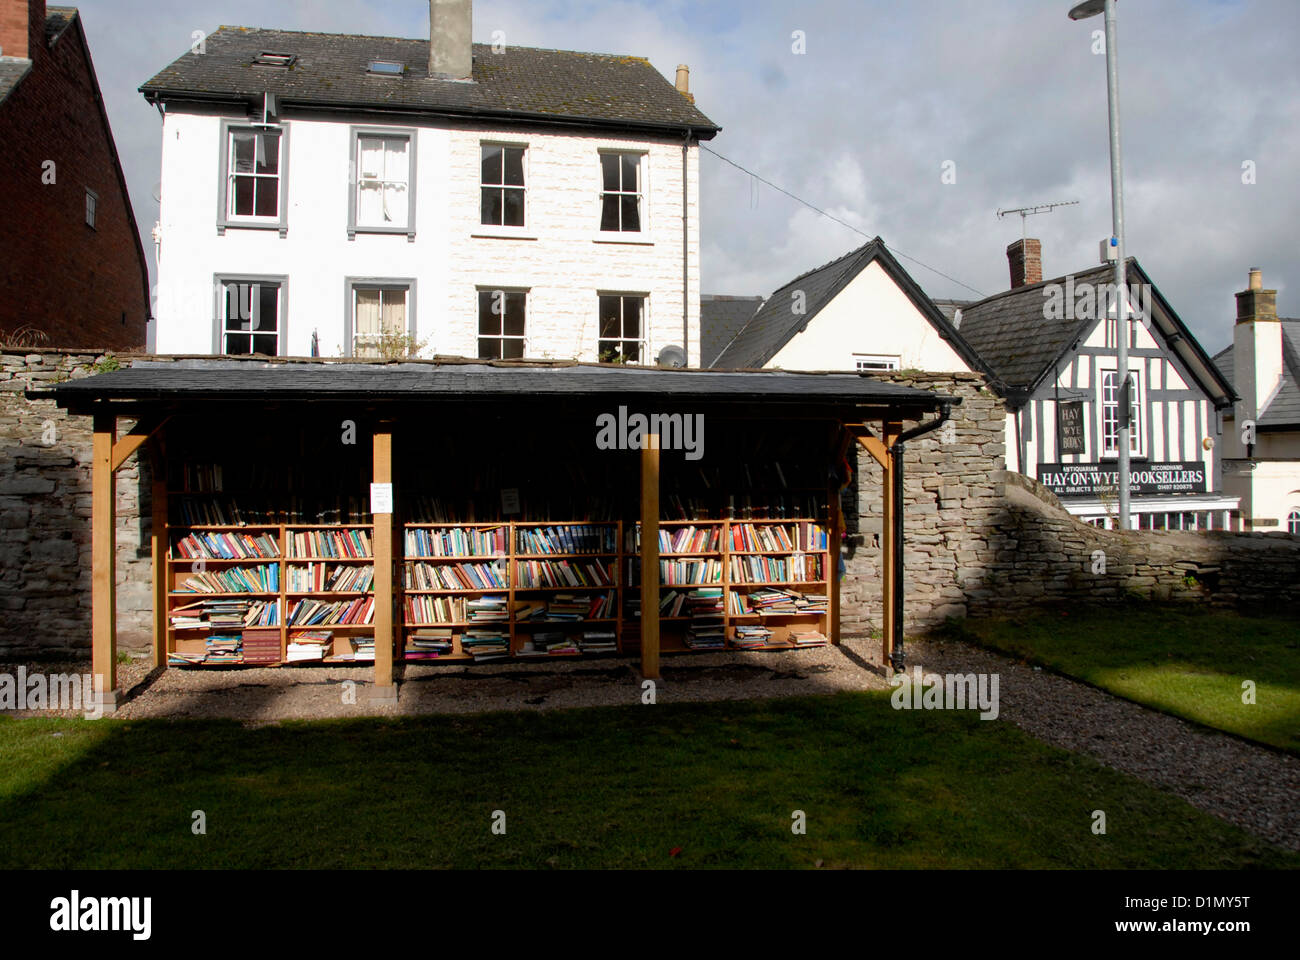 Boutiques livres à Hay-on-Wye gallois sur le côté de la frontière de l'Angleterre - Pays de Galles, Royaume-Uni Banque D'Images